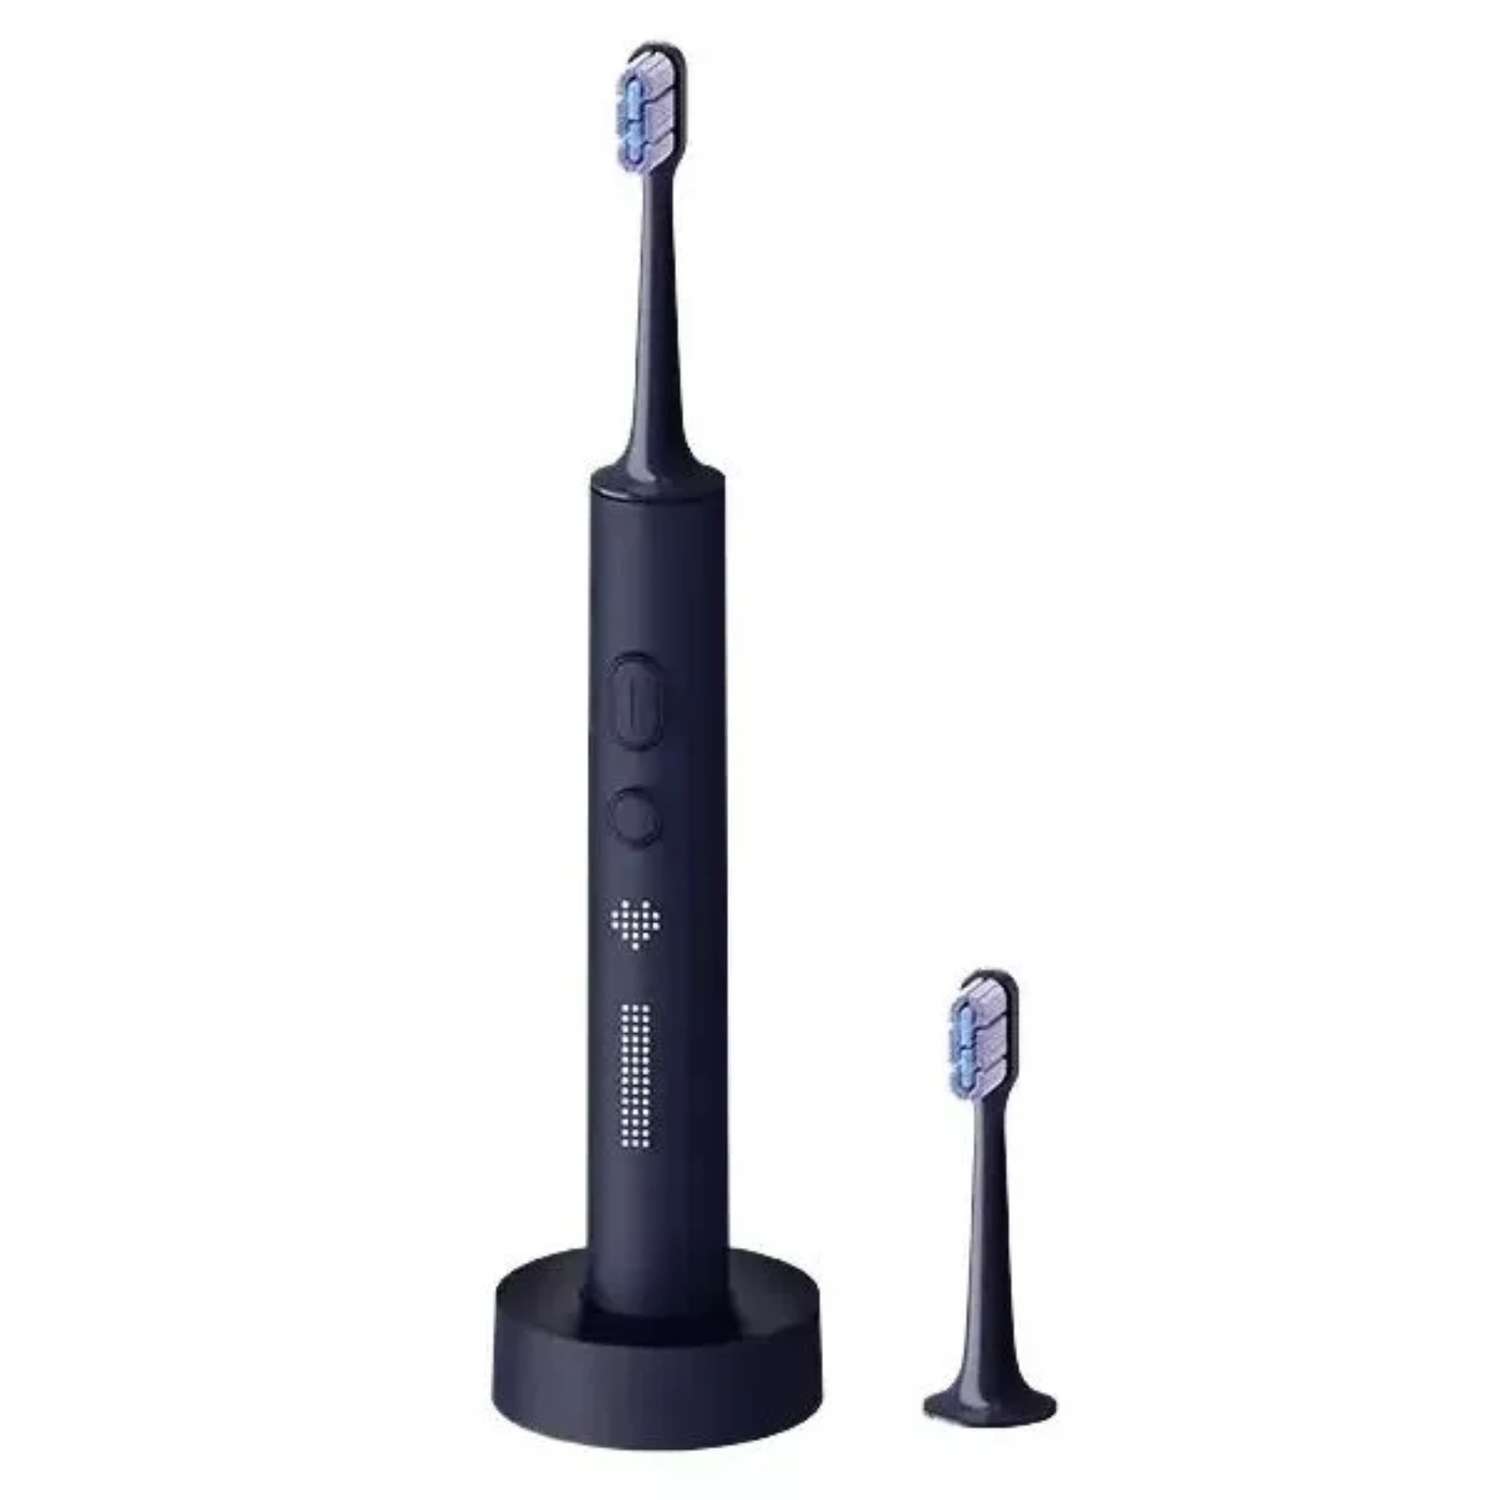 Электрическая XIAOMI зубная щетка Electric Toothbrush T700. звуковая 39600 пульс/мин чёрная - фото 1